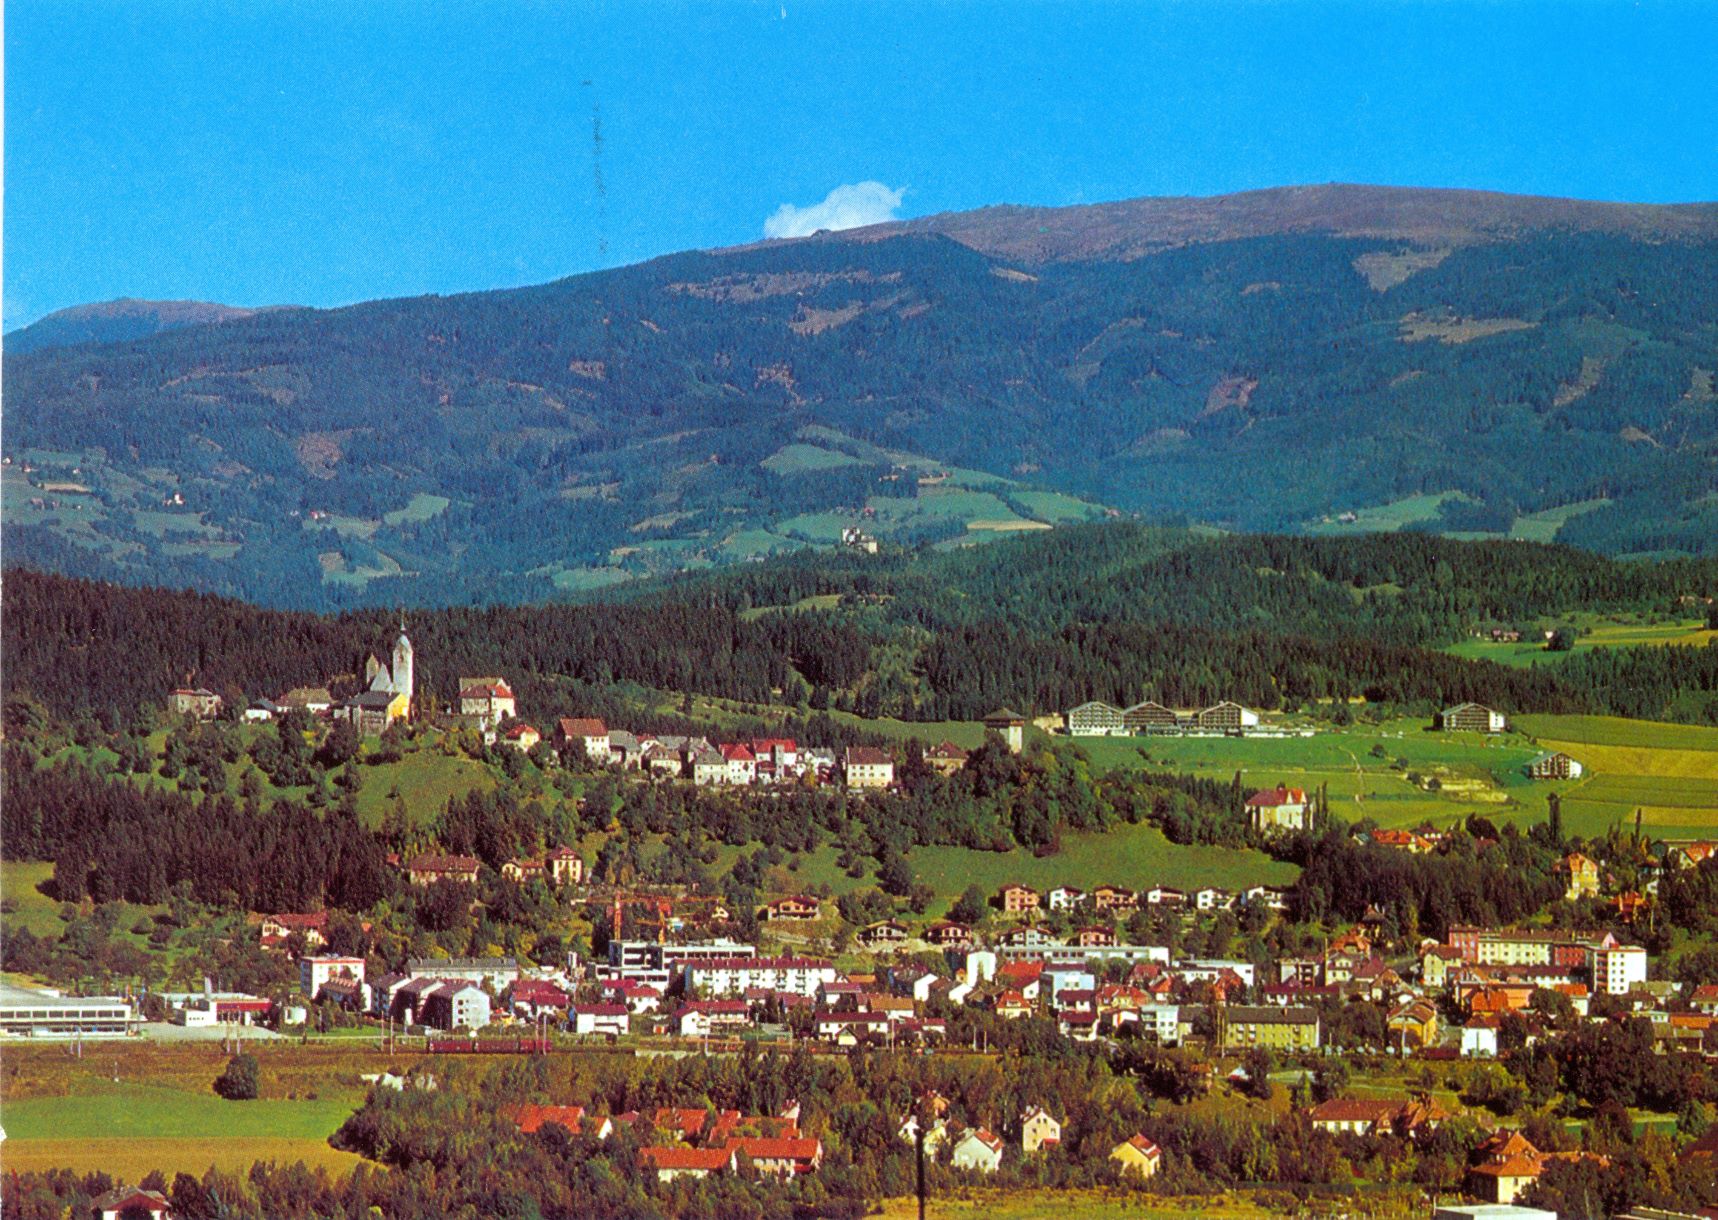 Ansicht von Althofen aus dem Jahr 1980
(Fotohinweis: Stadtarchiv Althofen/Sammlung Knafl)